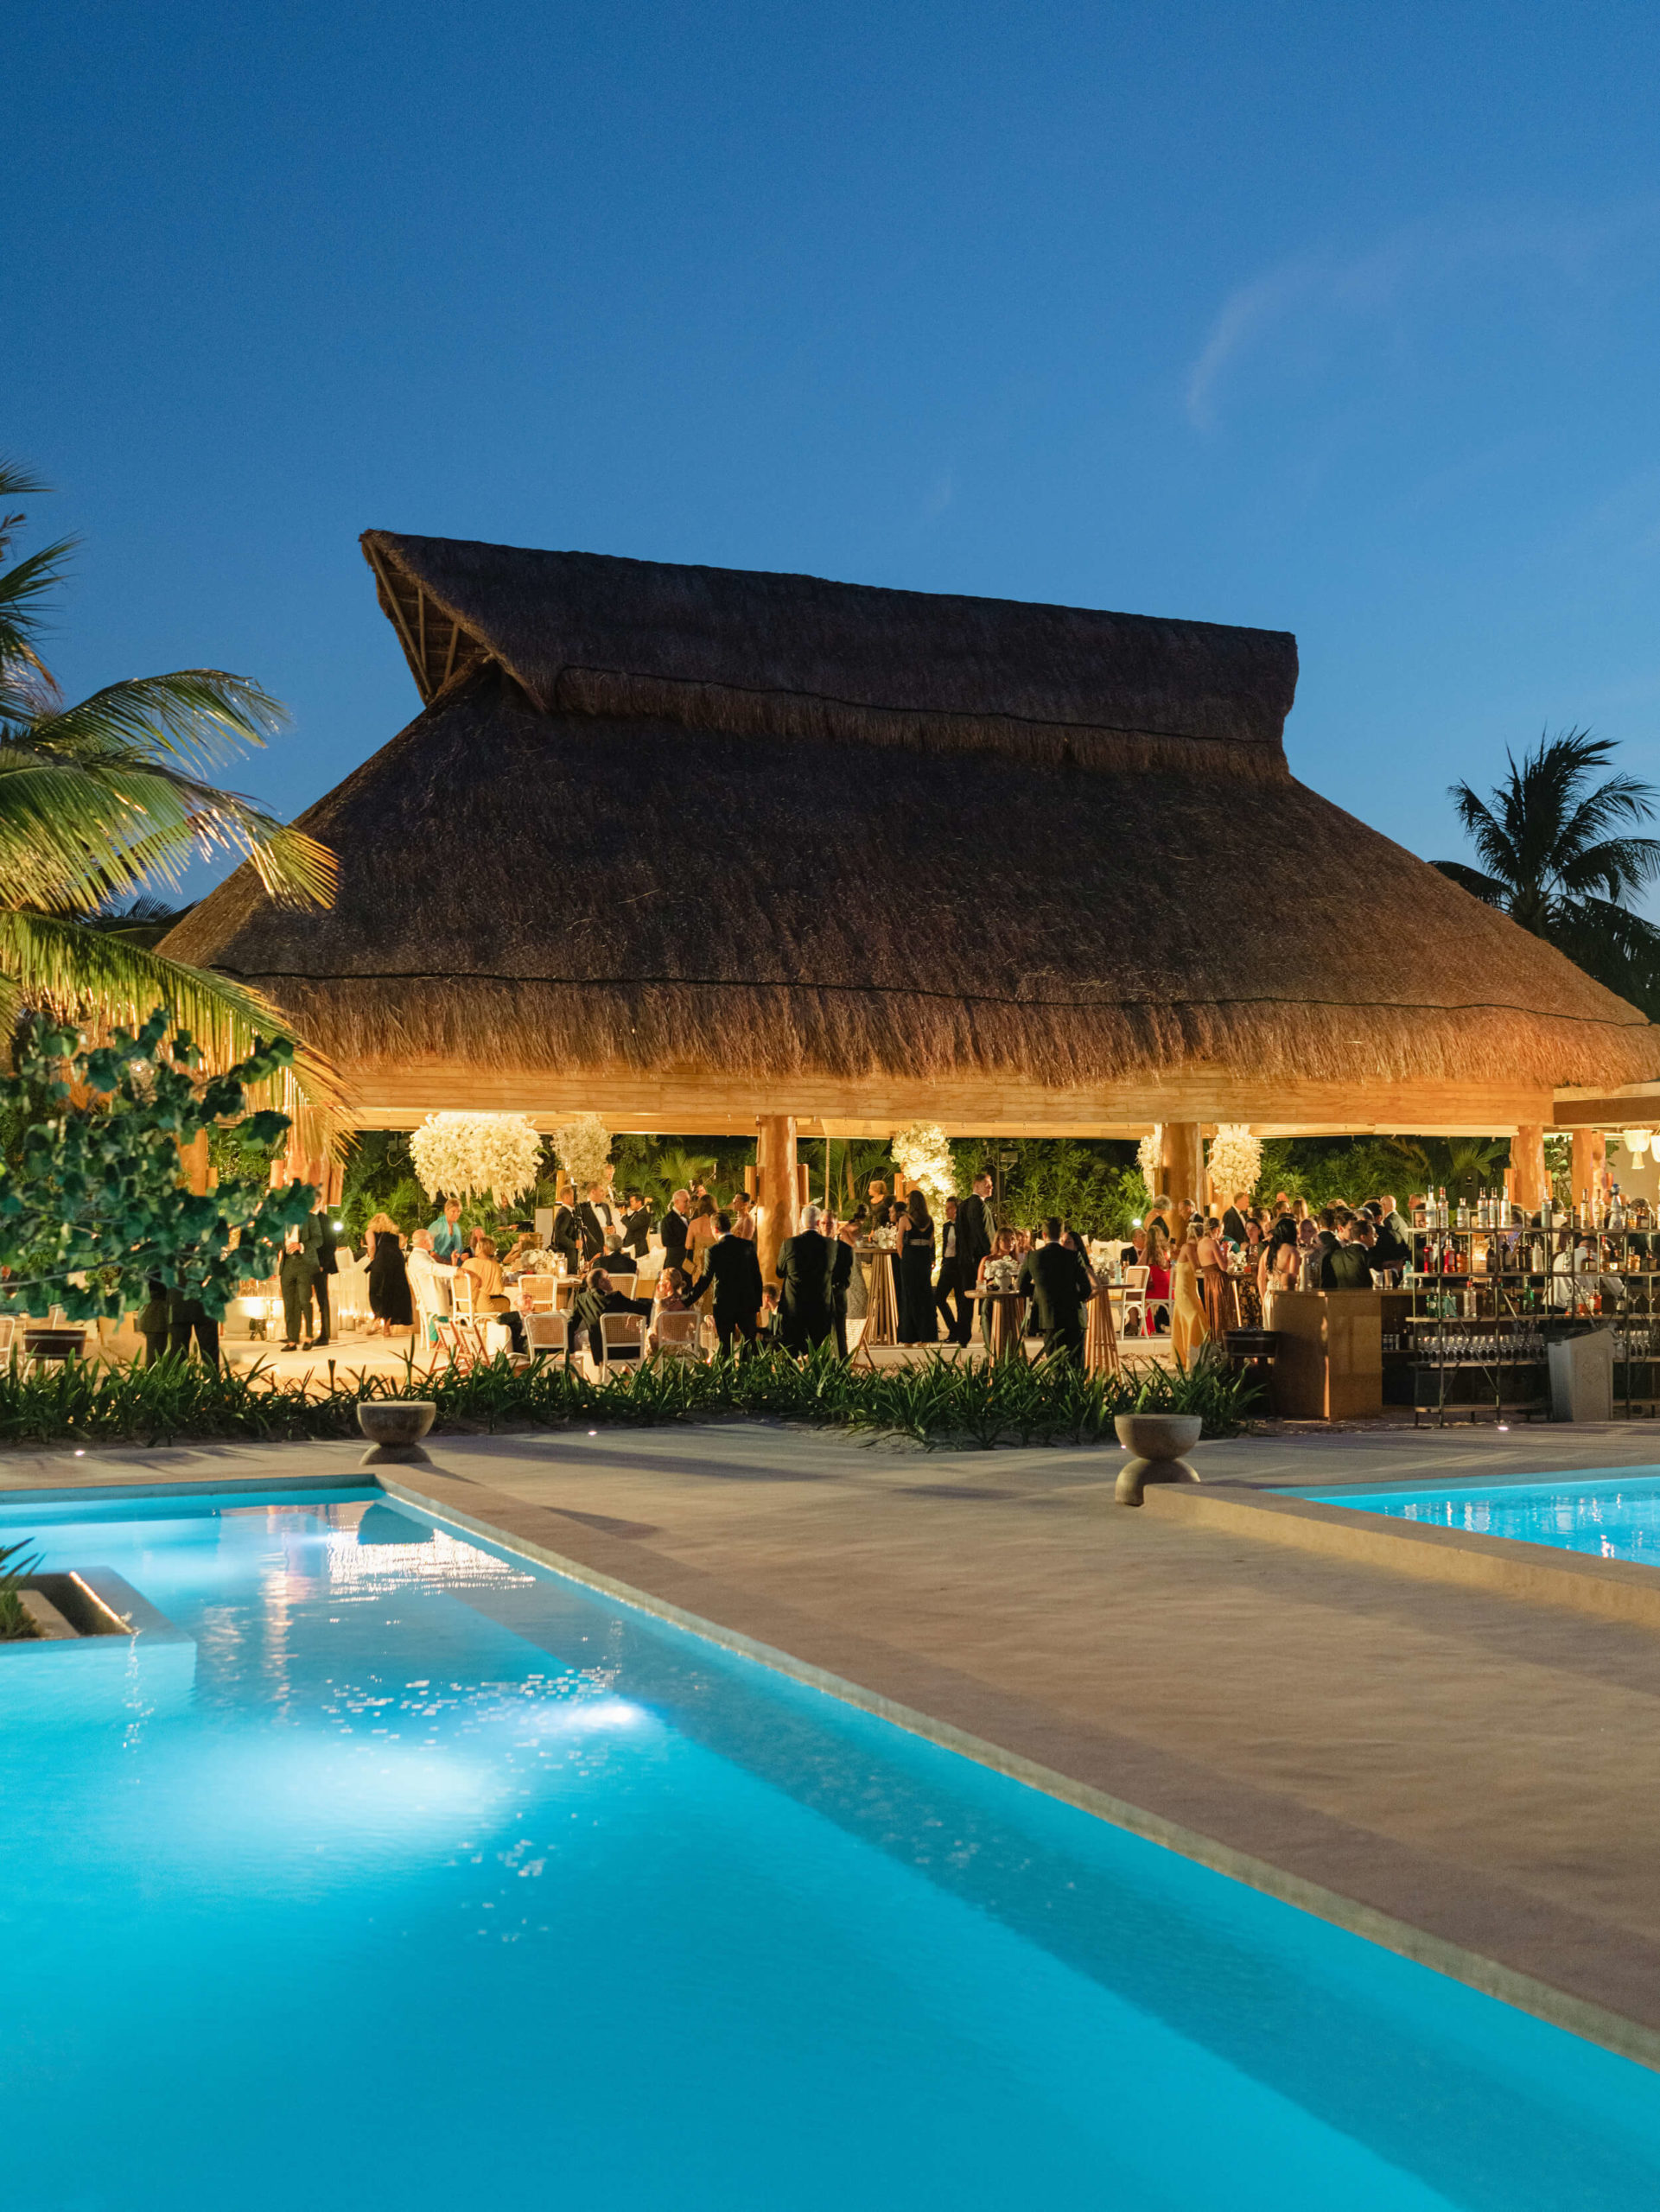 Venue details; the Rosewood Mayakoba Resort in Playa del Carmen